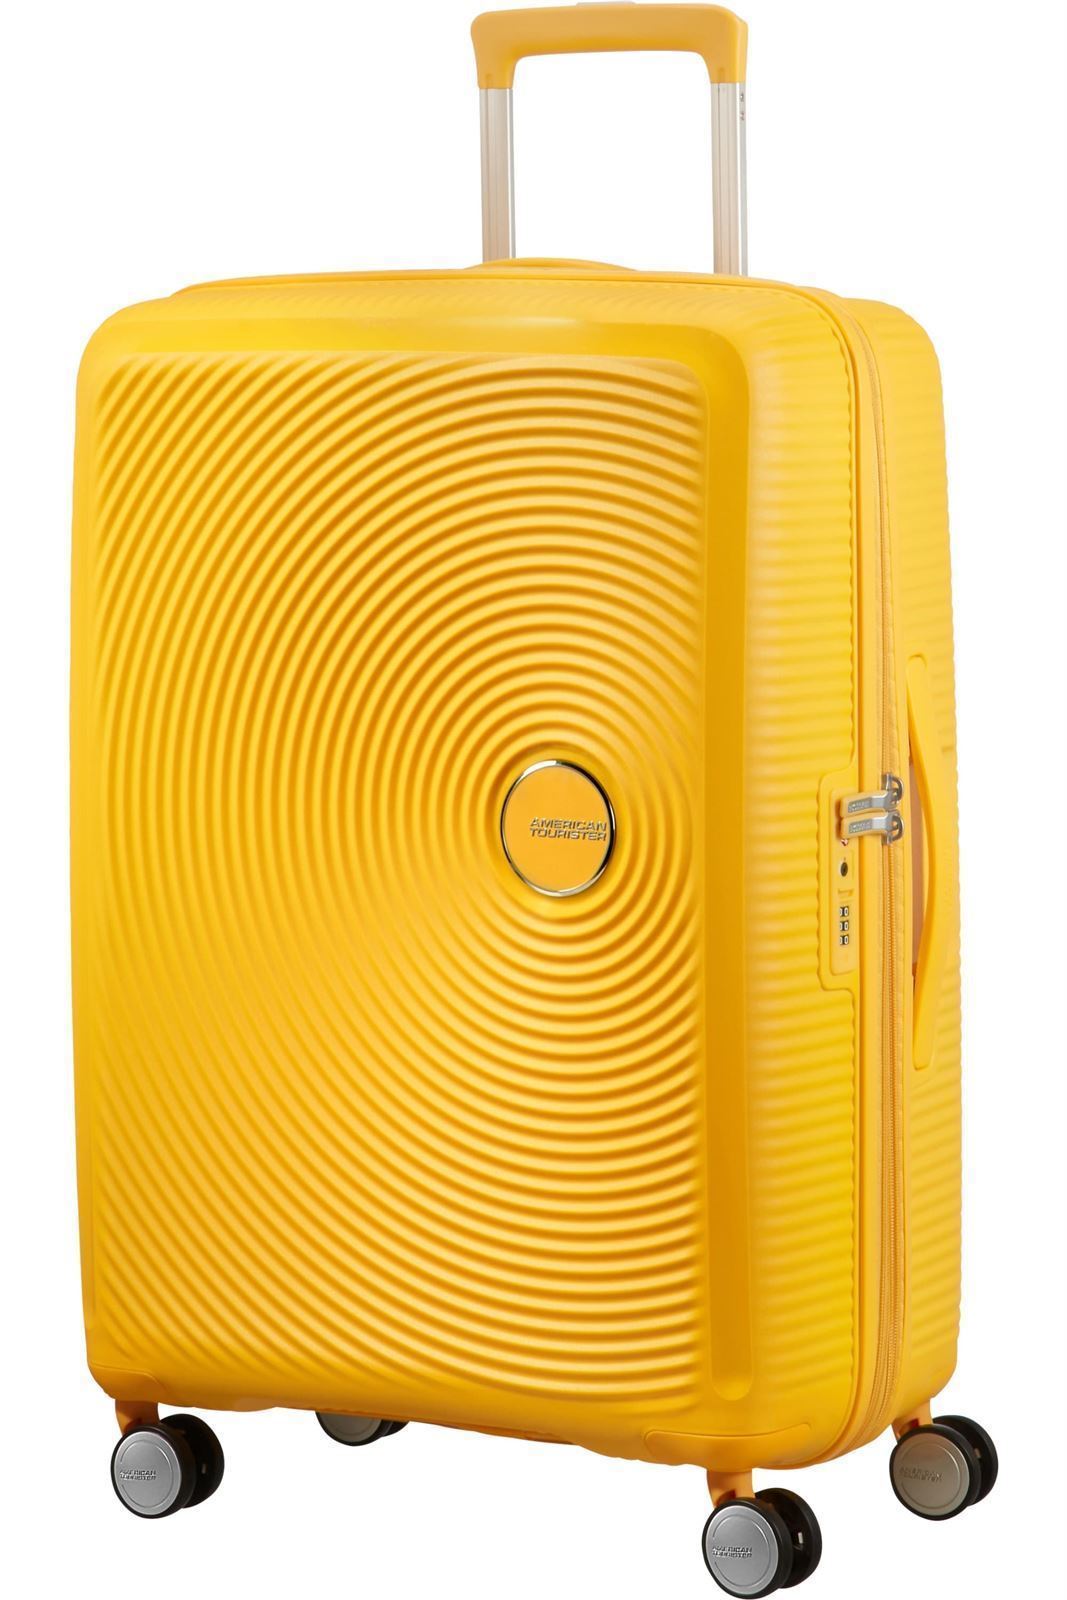 American Tourister Soundbox Maleta Rígida Mediana Expandible Color Golden Yellow 3 Años de Garantía - Imagen 2